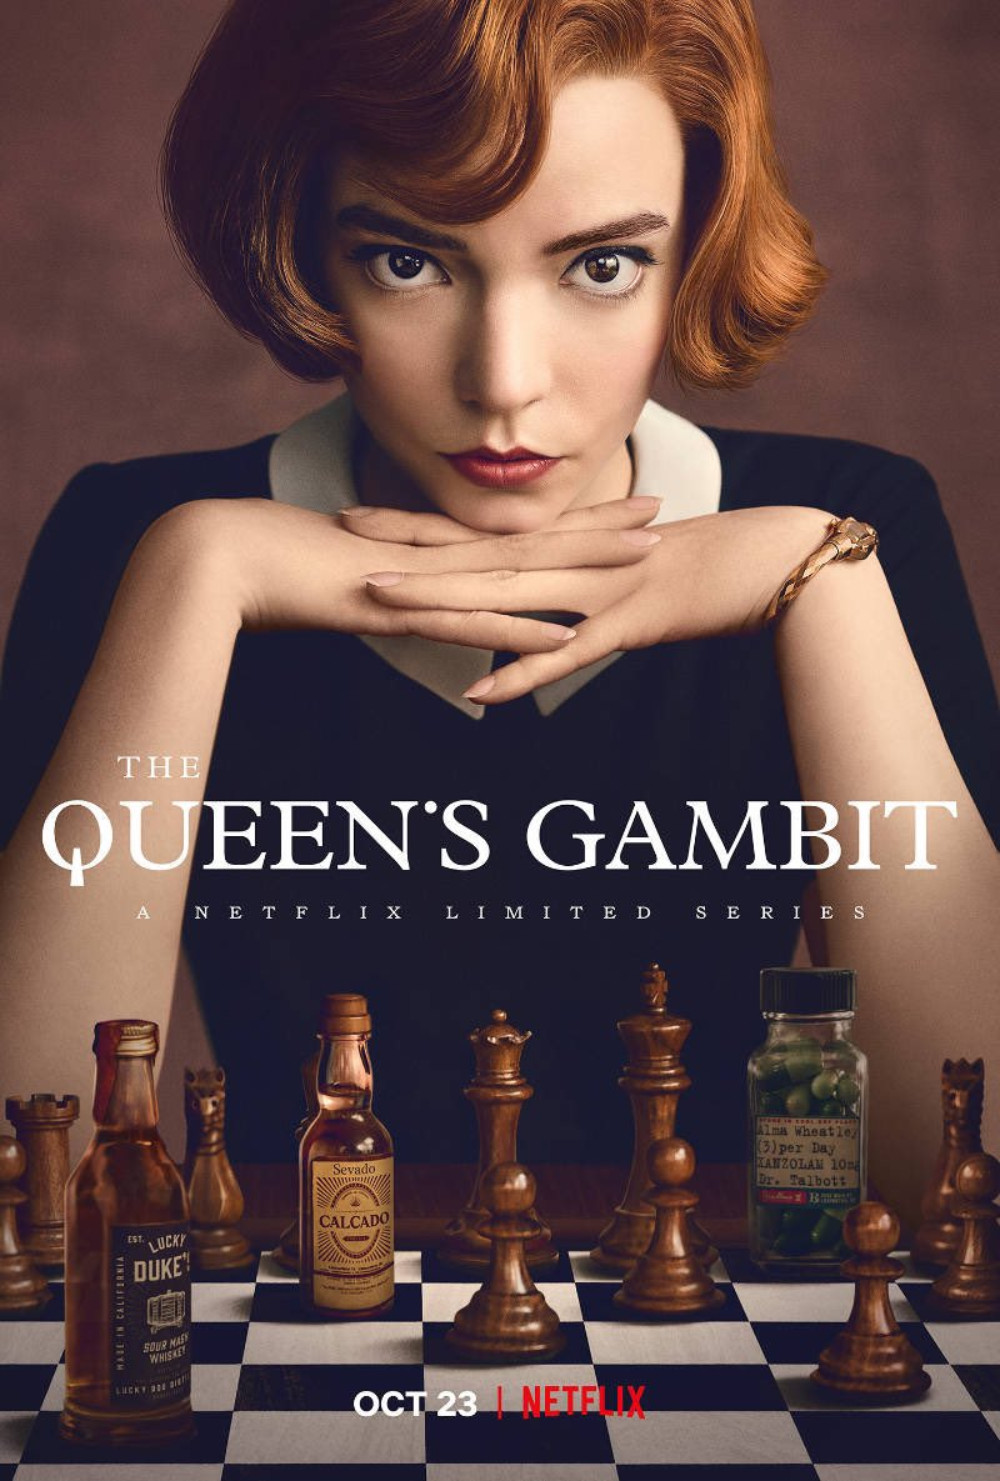 elizabeth harmon icon  The queen's gambit, Queen's gambit, Anya taylor joy